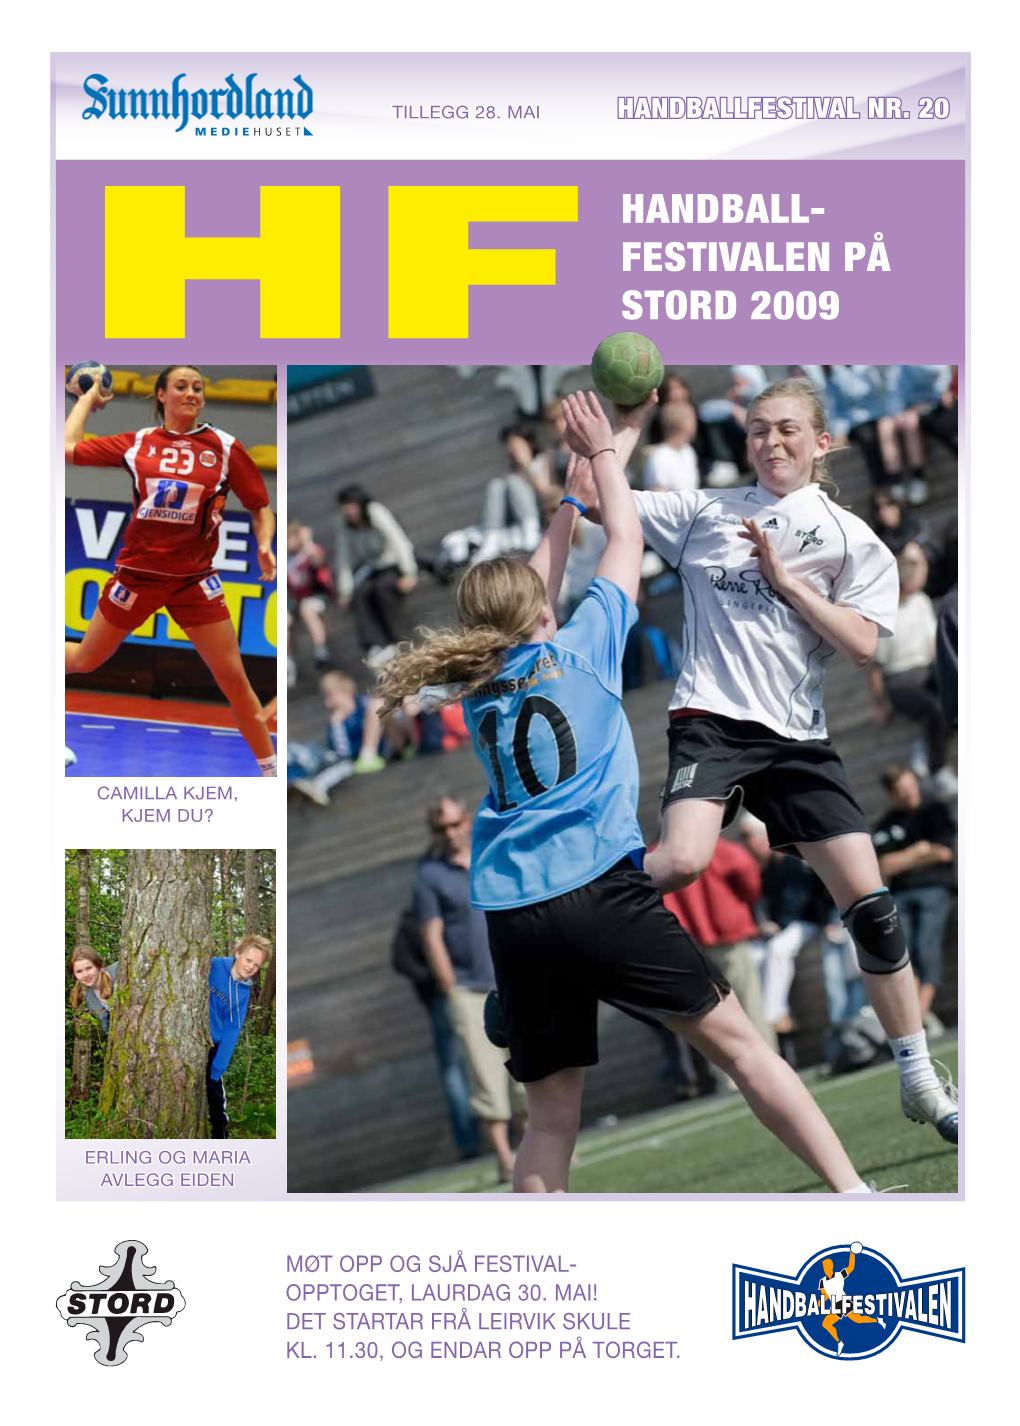 Handball- Festivalen På Stord 2009